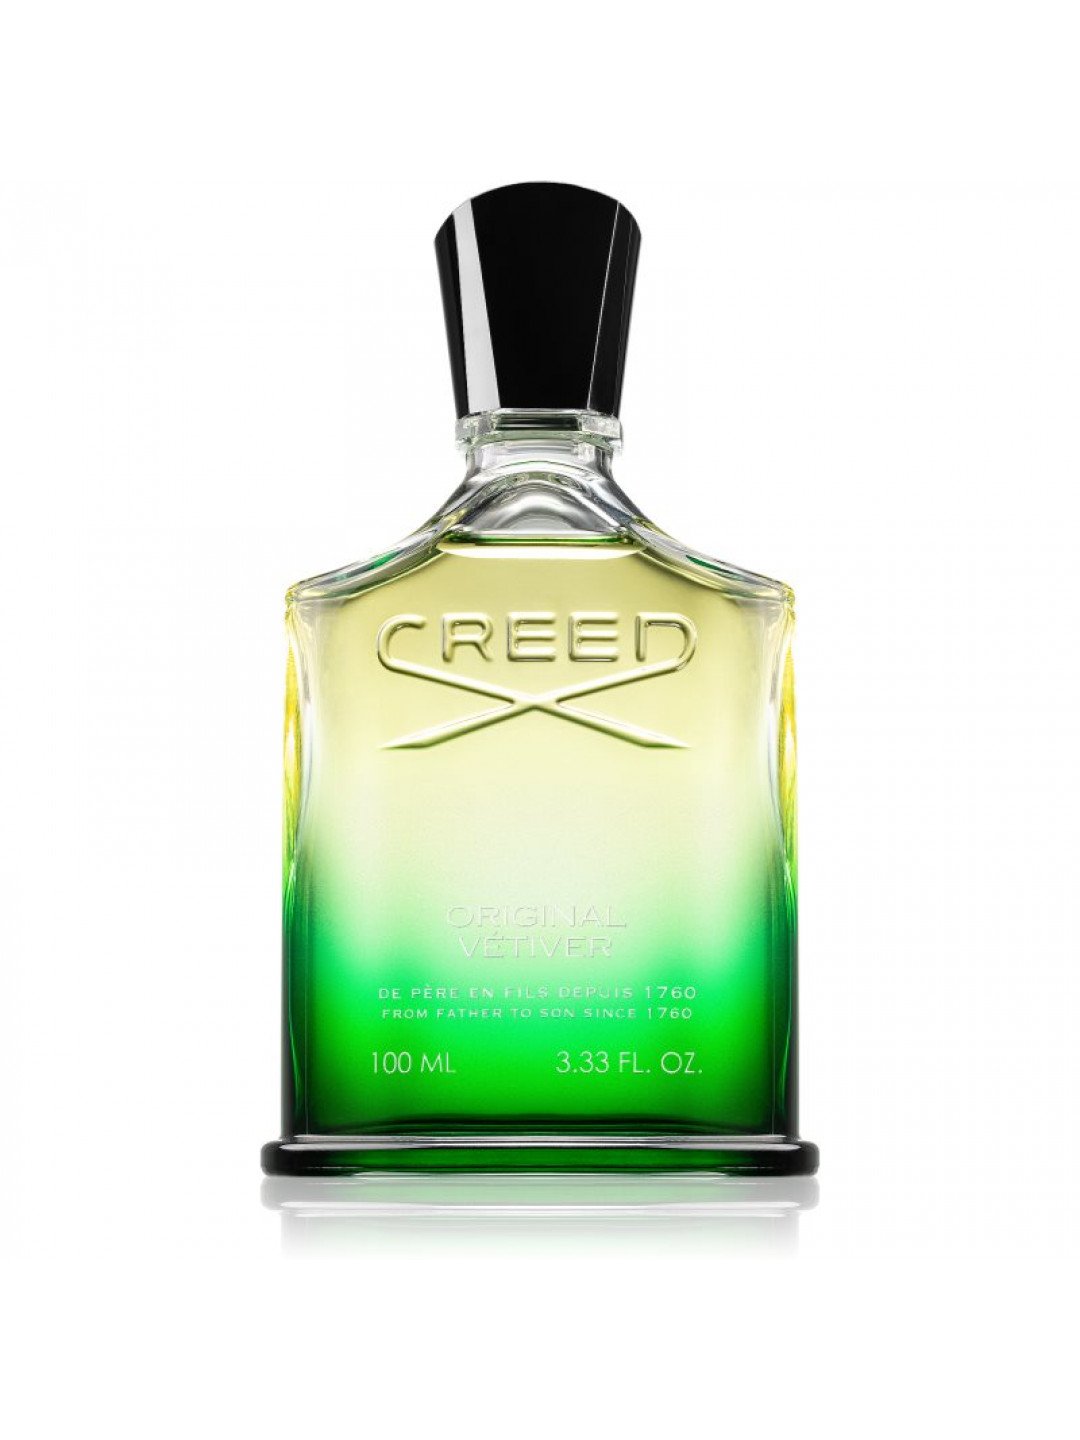 Creed Original Vetiver parfémovaná voda pro muže 100 ml